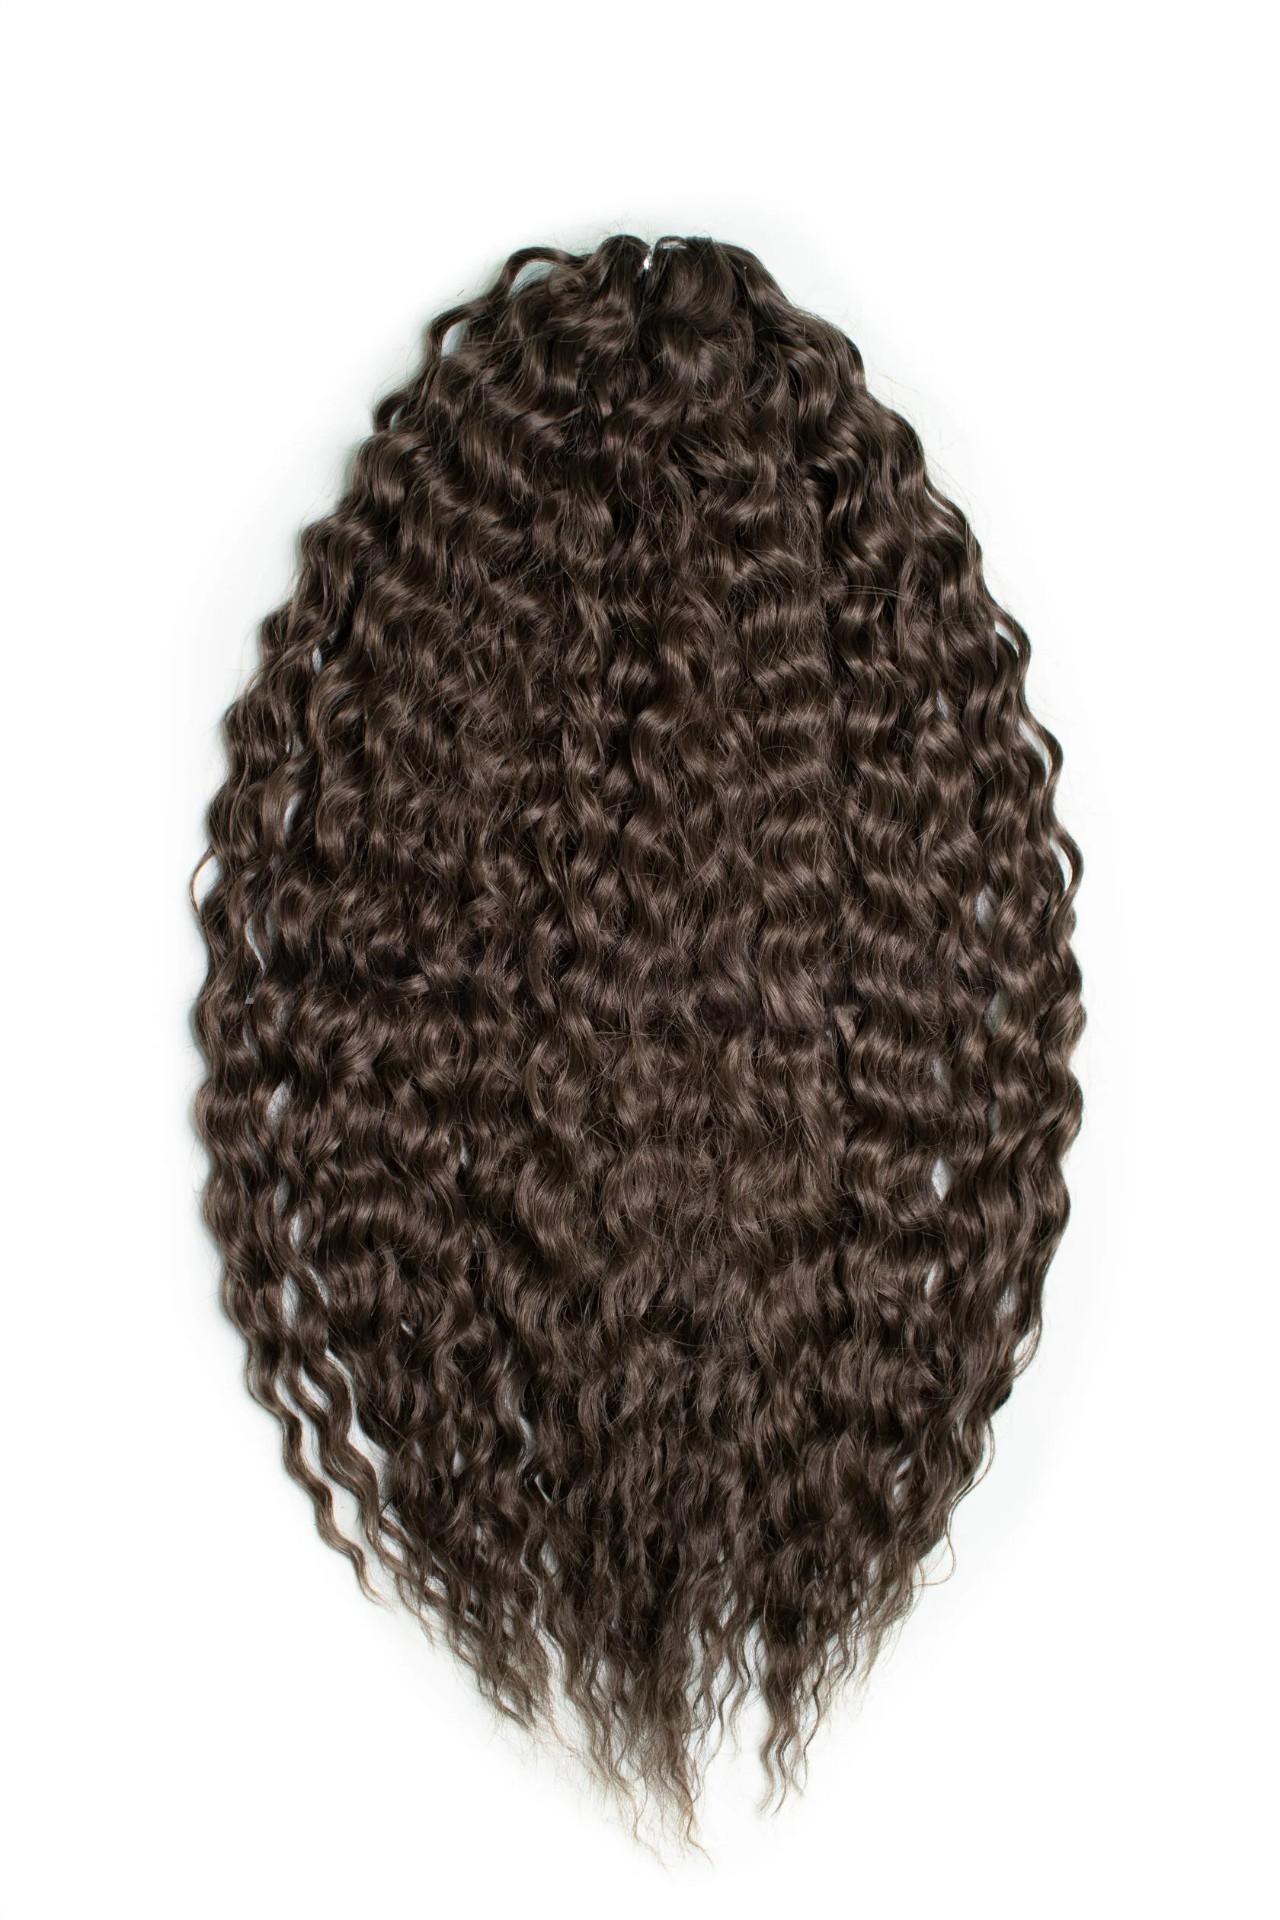 Афрокудри для плетения волос Ariel цвет 12 темно-русый 55см вес 300г резиночки для плетения браслетов rainbow loom персидская коллекция искристый каштан